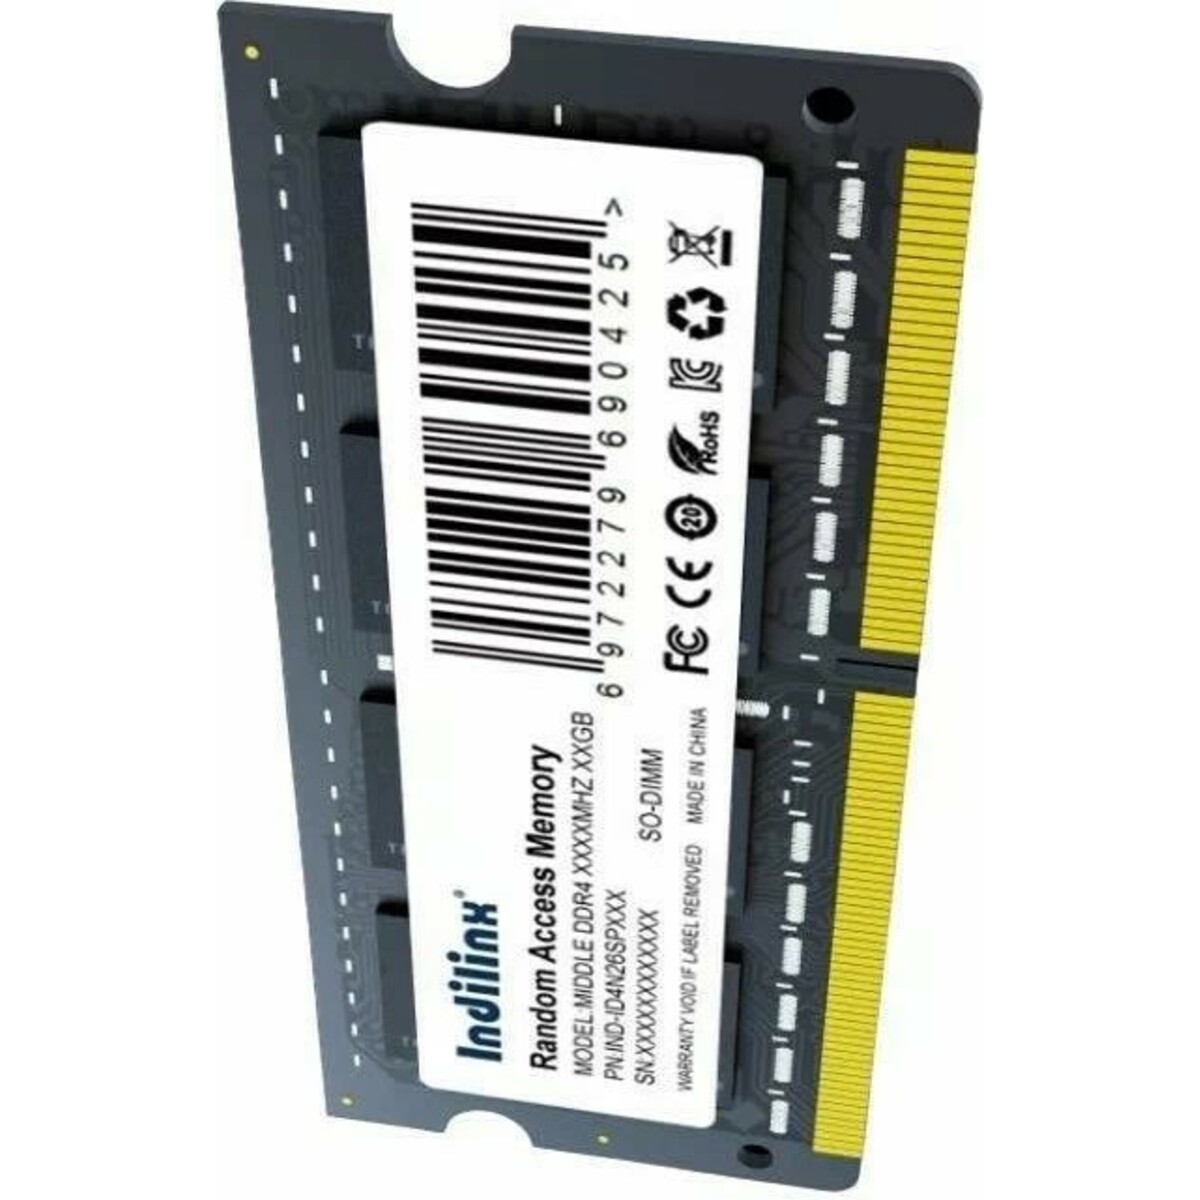 Память DDR4 16Gb 2666MHz Indilinx IND-ID4N26SP16X 